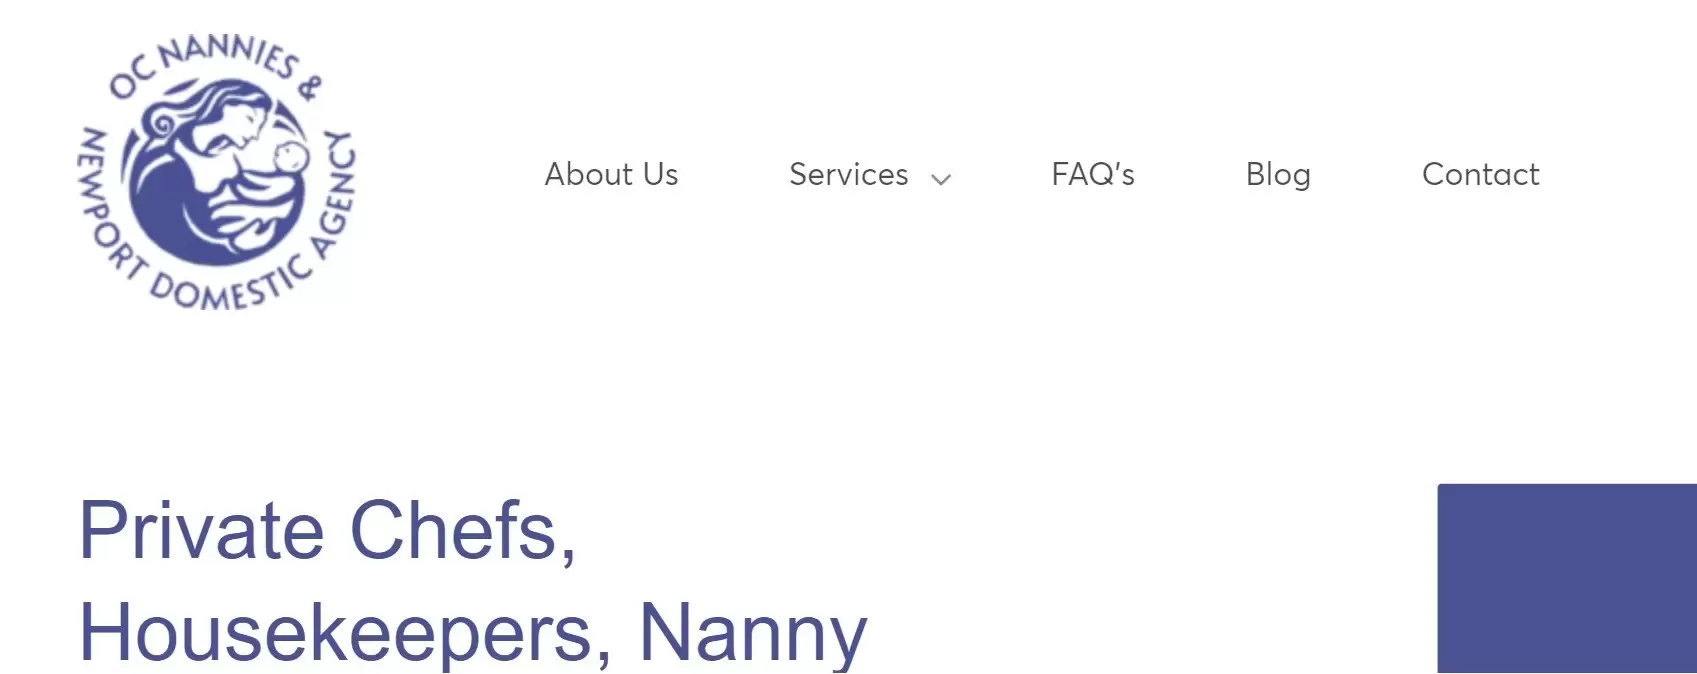 OC Nannies and Newport Domestics Agency